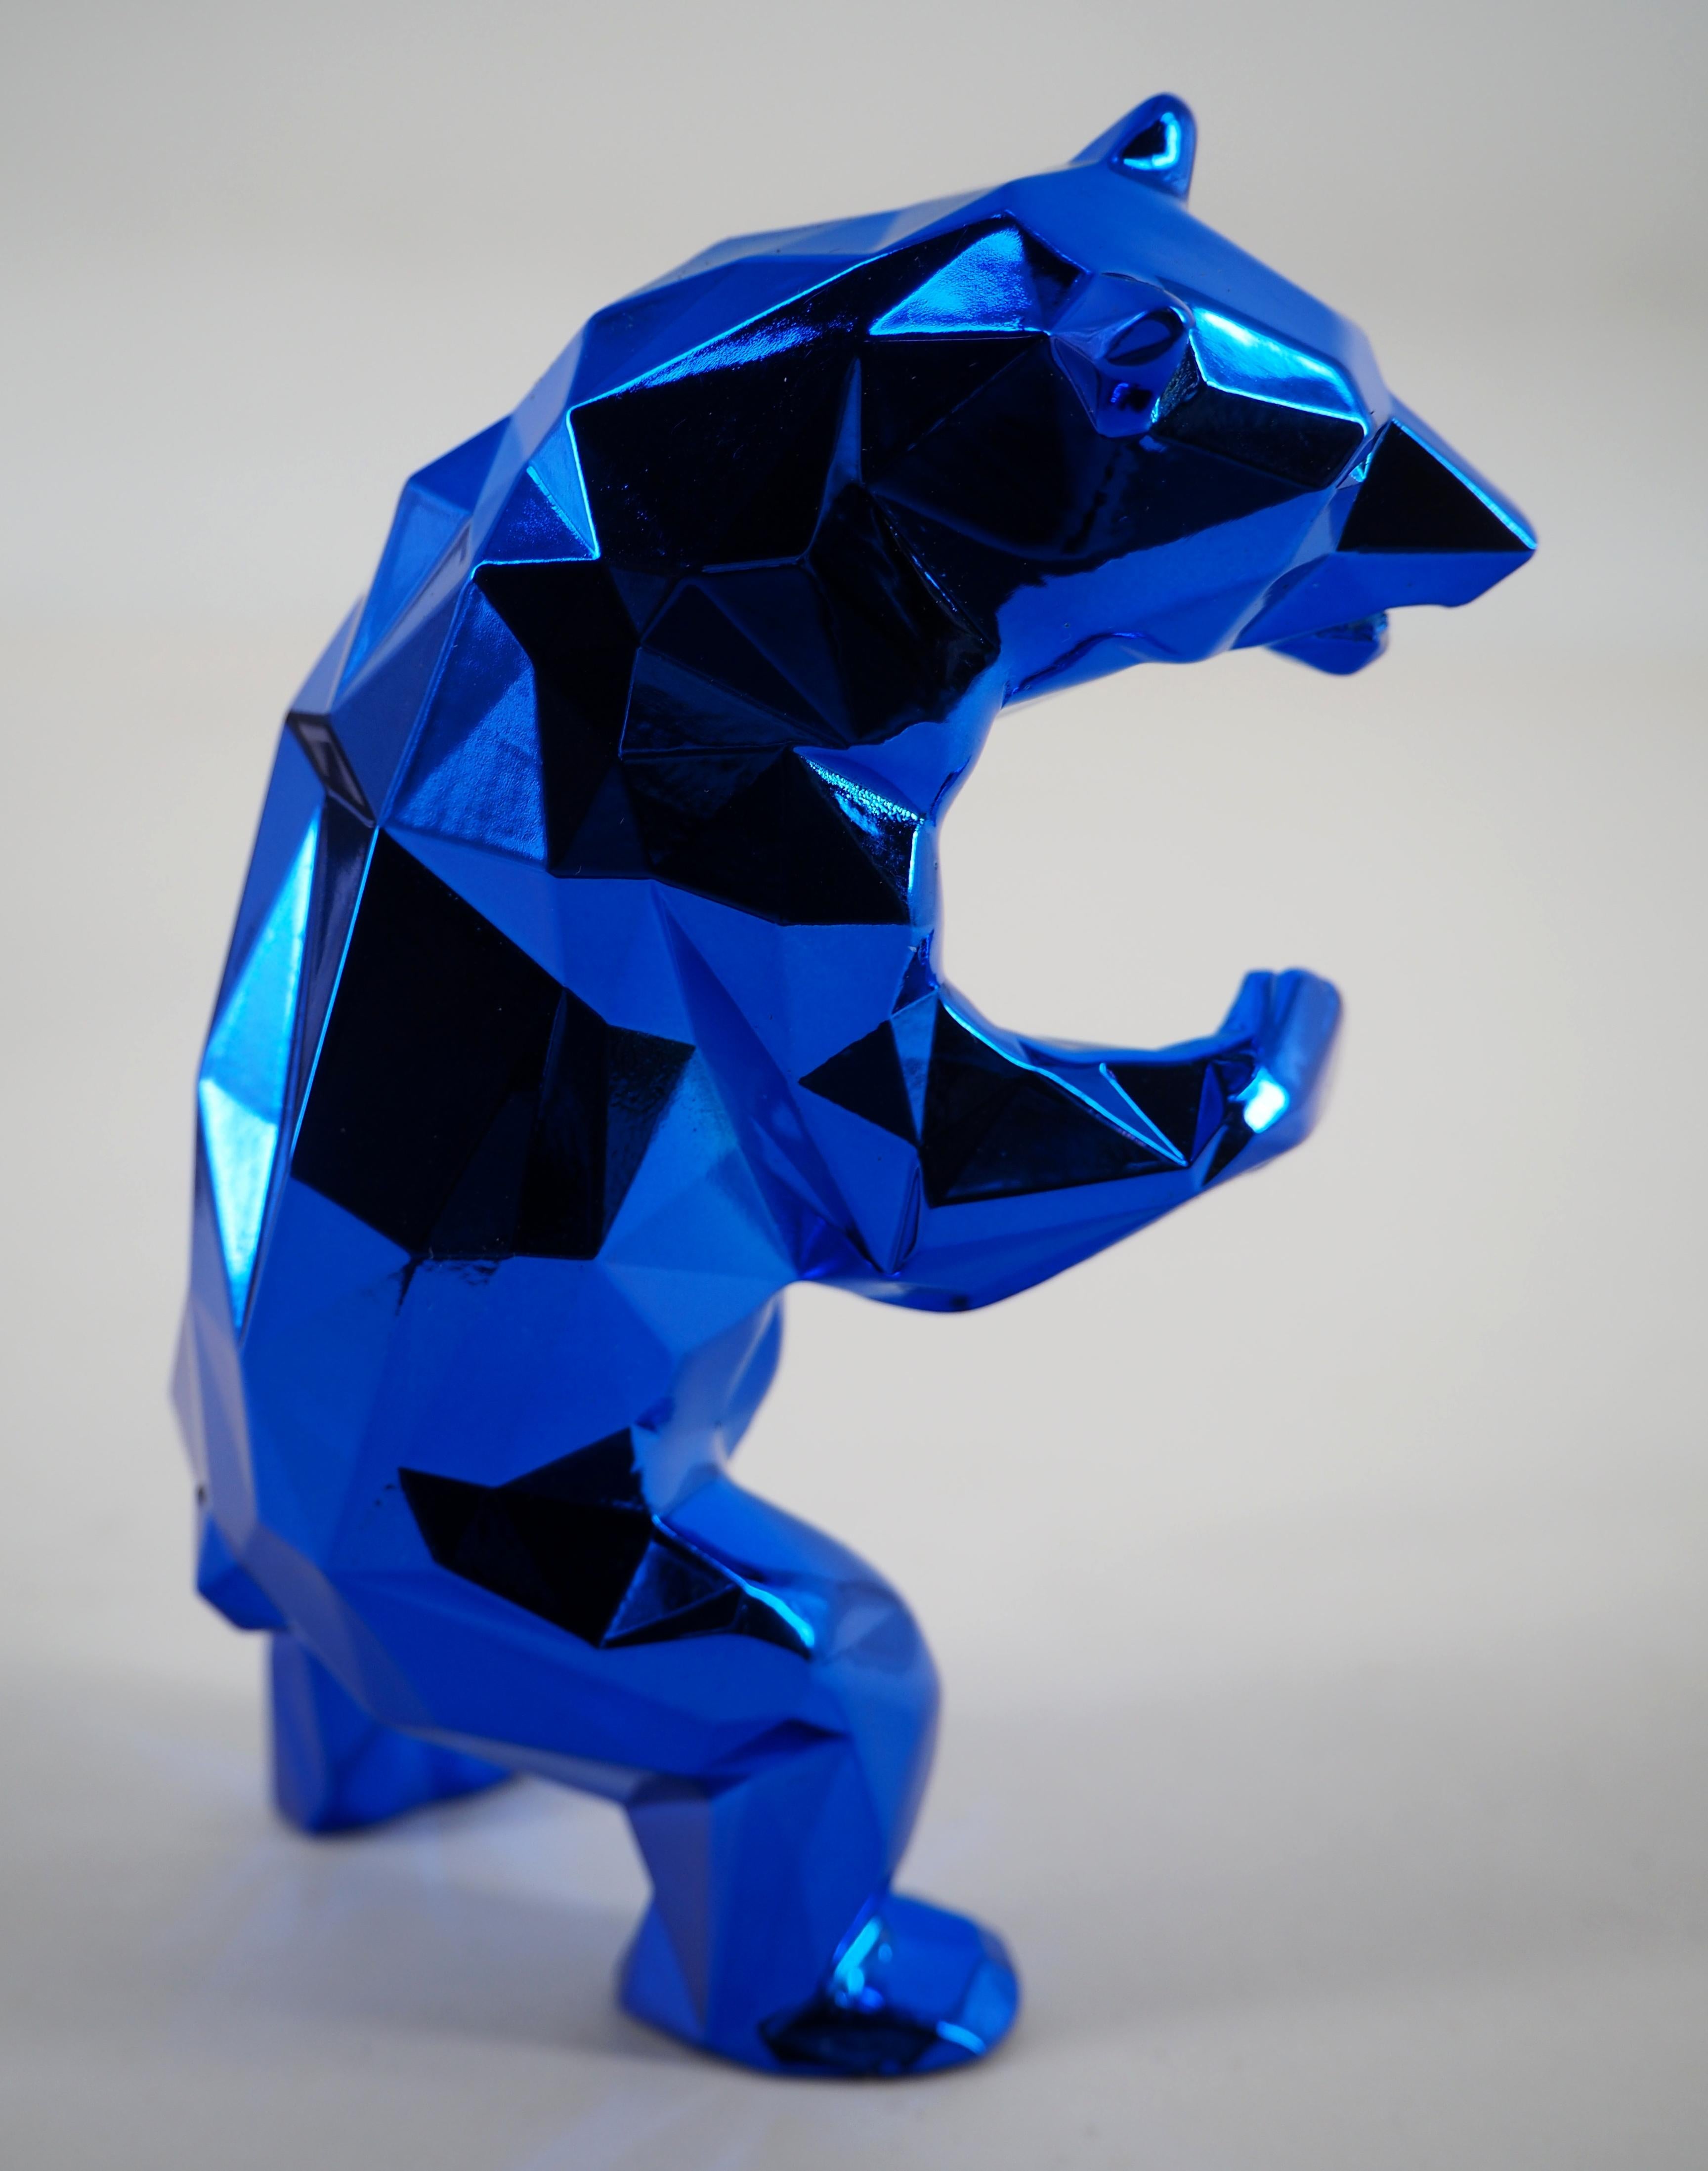 Richard ORLINSKI
StandingBear (Blue)

Sculpture en résine
Metallic Blue
Environ 13::5 x 8 cm (c. 5.5 x 3.5 in)
Présenté dans une boîte originale avec certificat

Excellent état